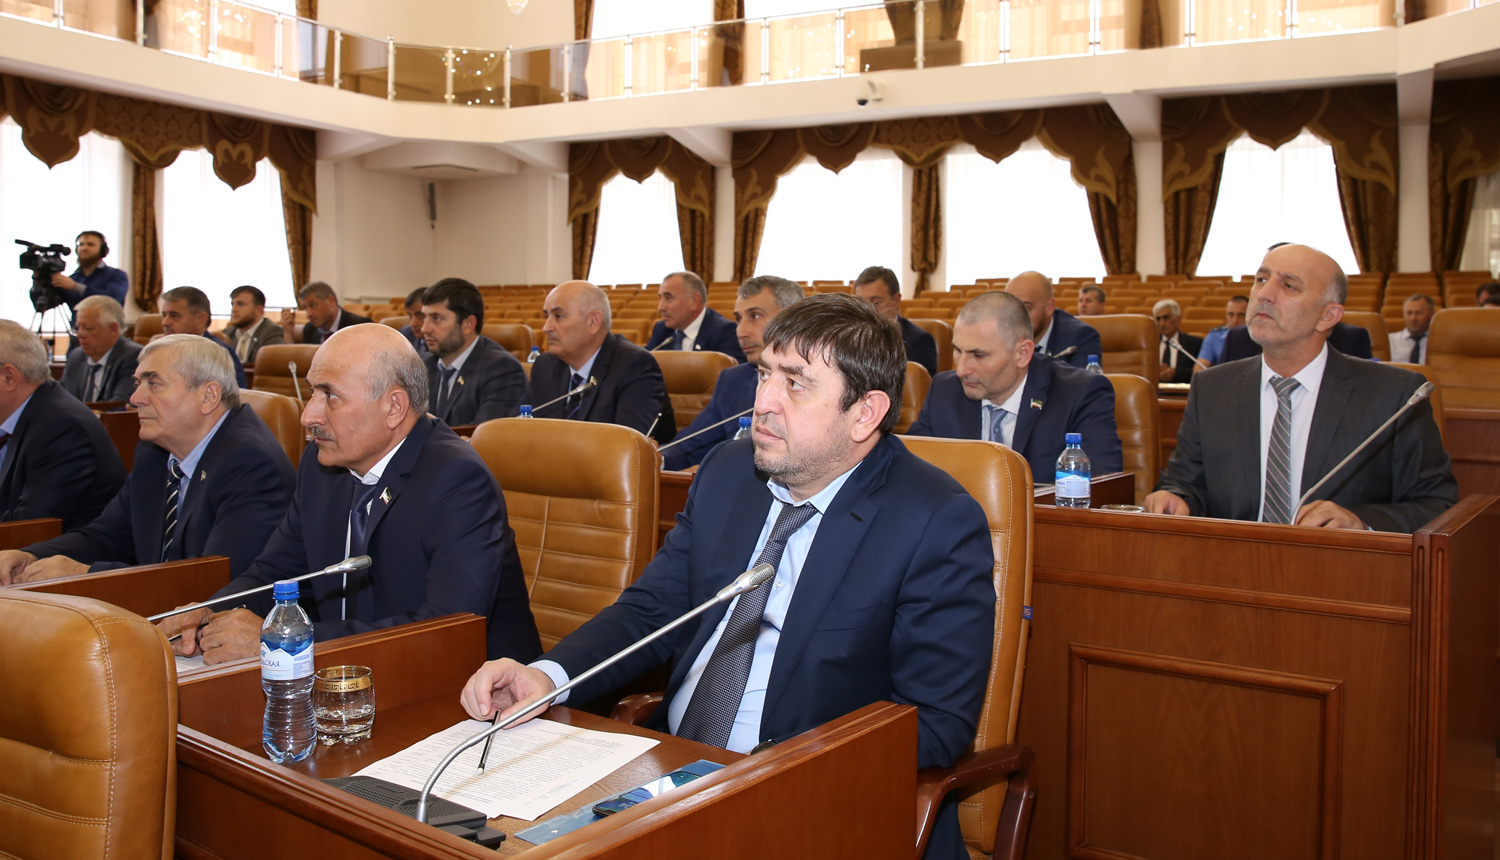 Денилбек Абдулазизов выступил с докладом на заседании Парламента Чеченской Республики 